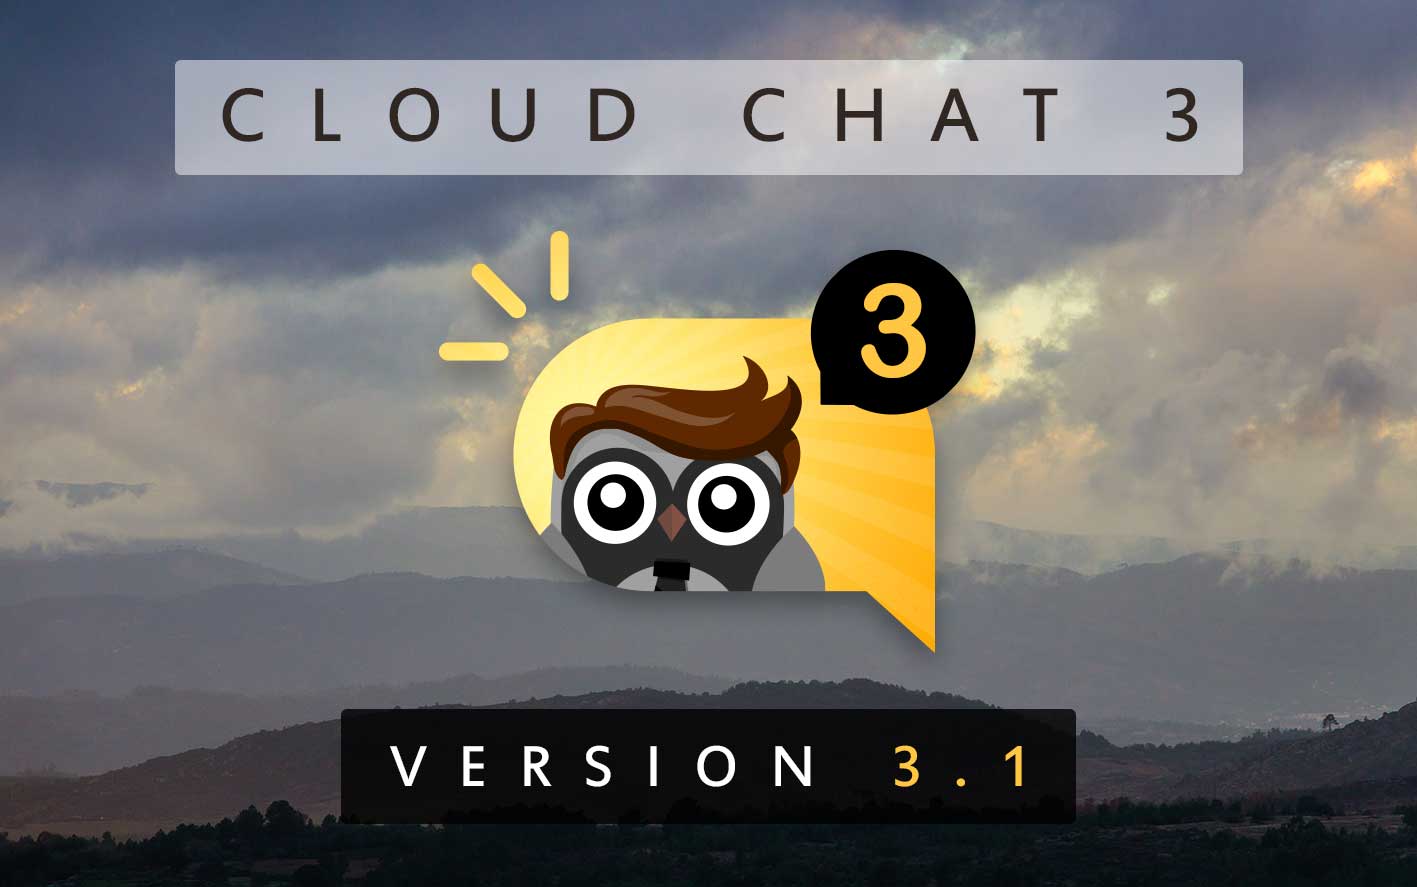 Cloud Chat 3 - Version 3.1